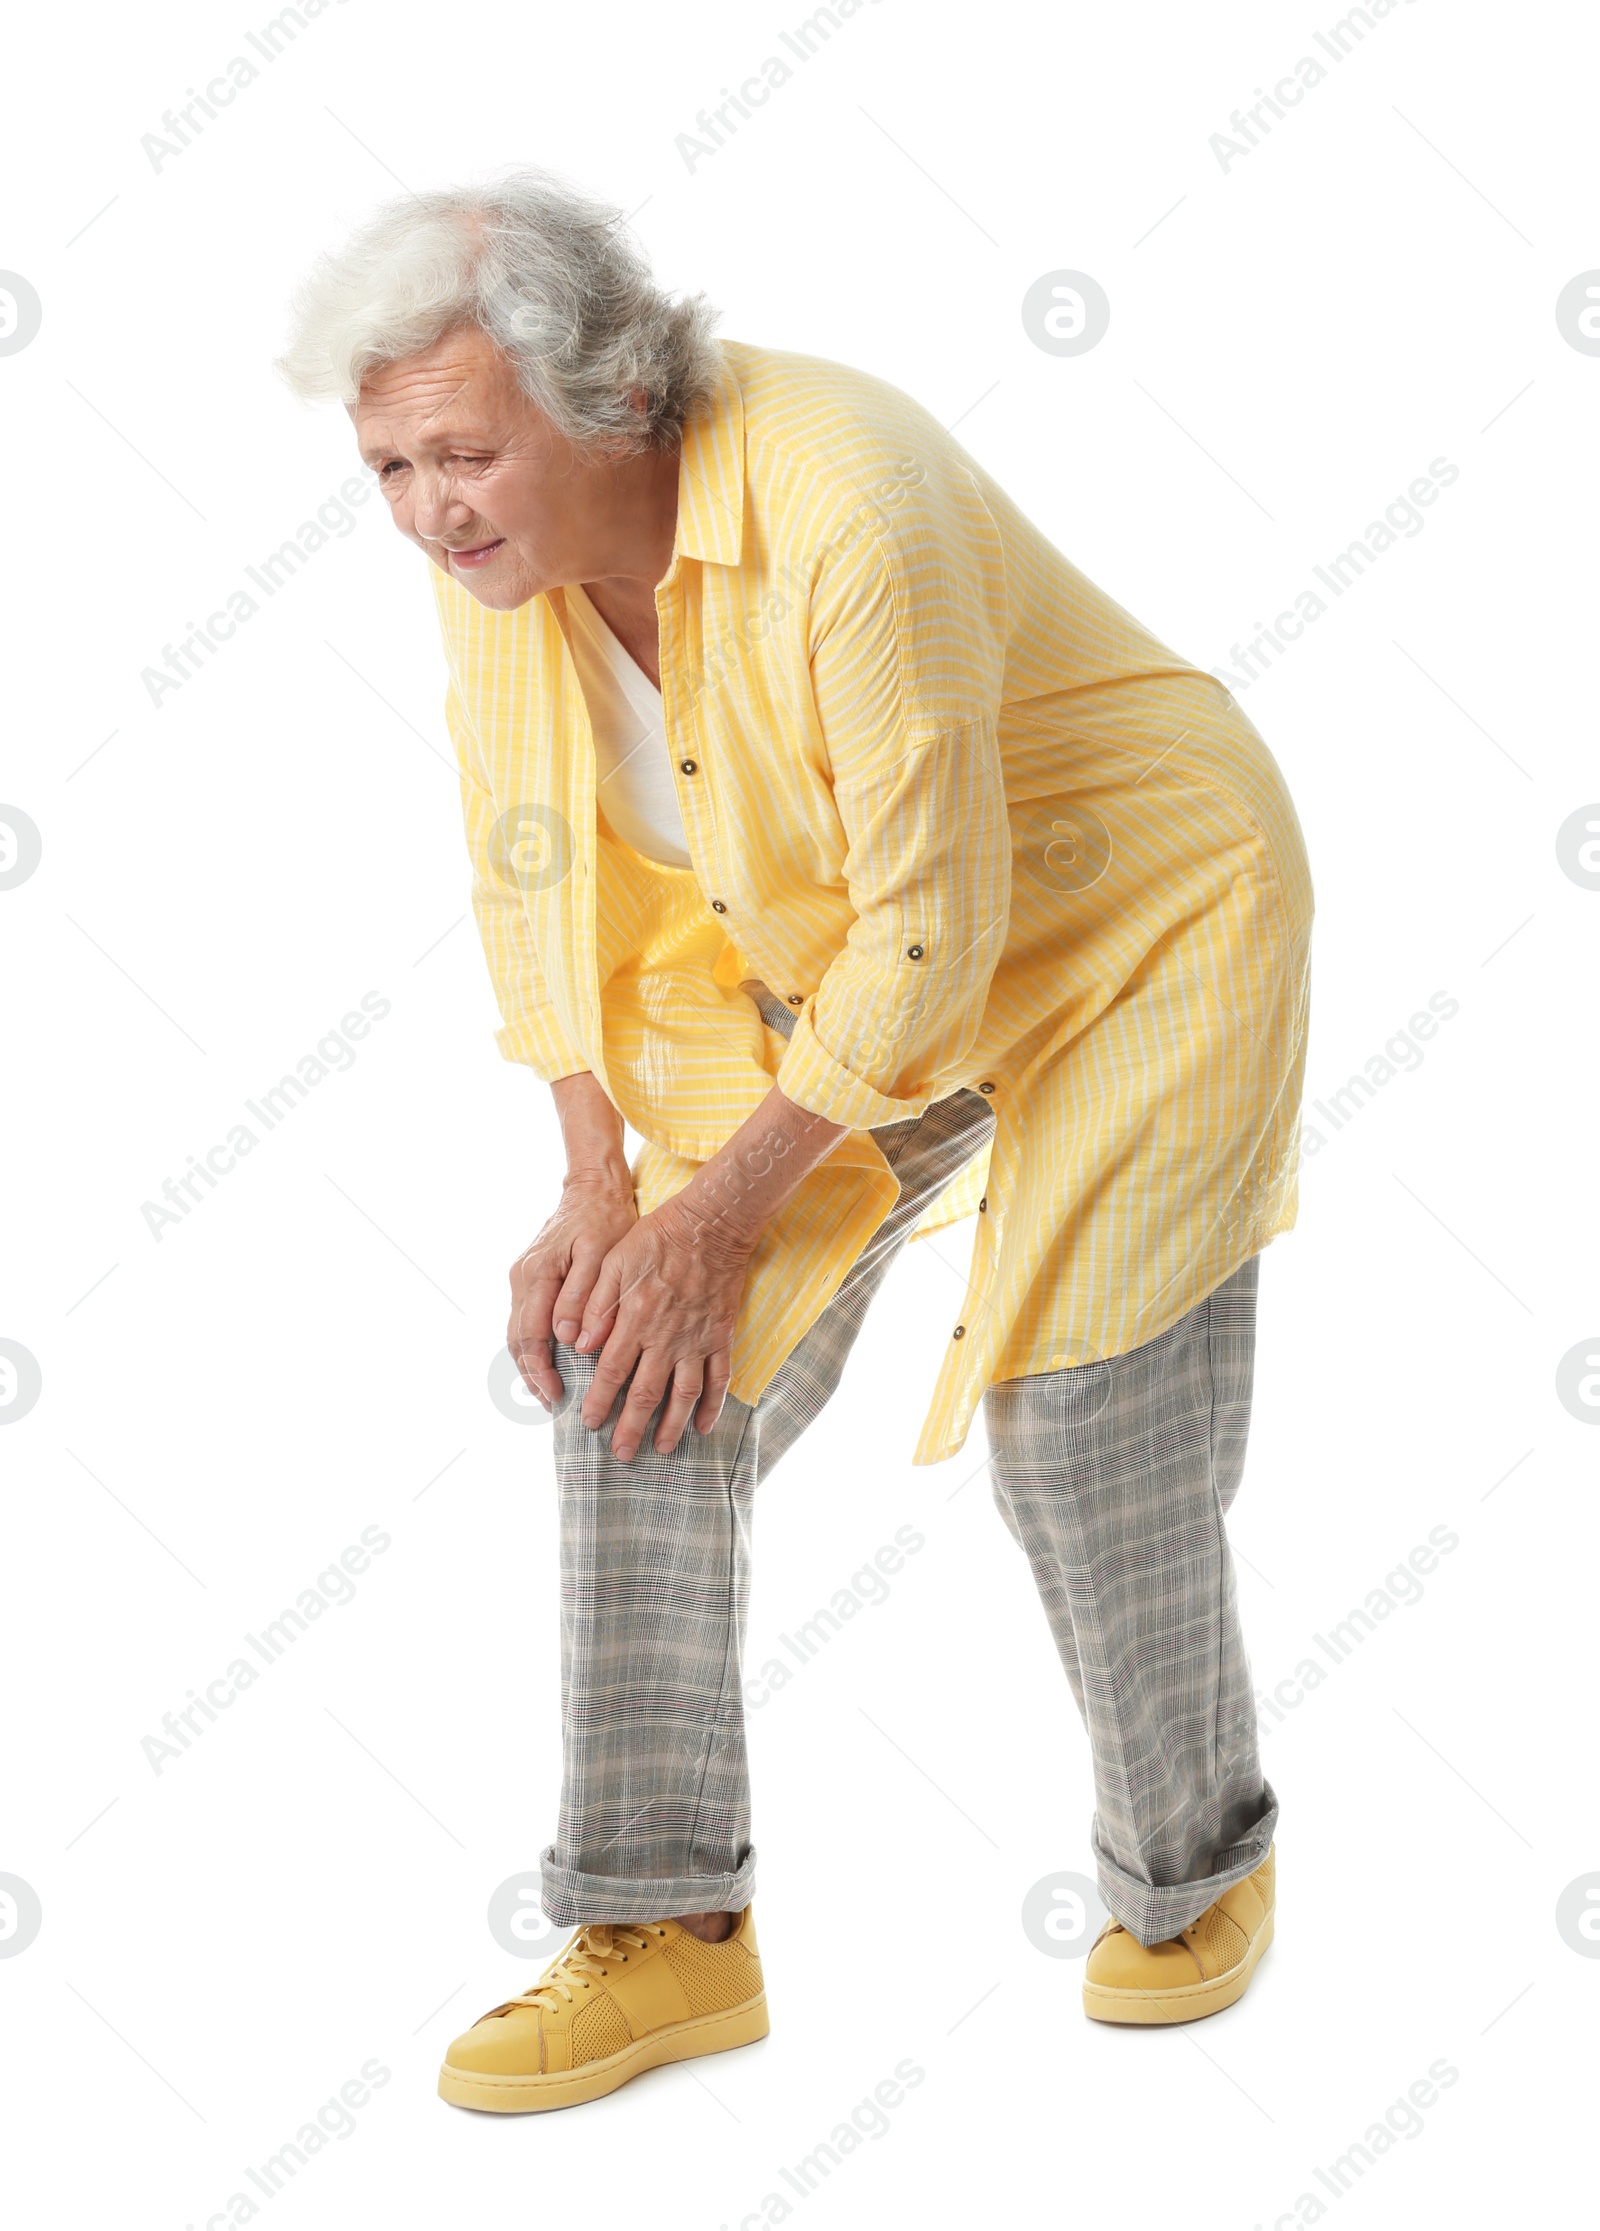 Photo of Full length portrait of senior woman having knee problems on white background